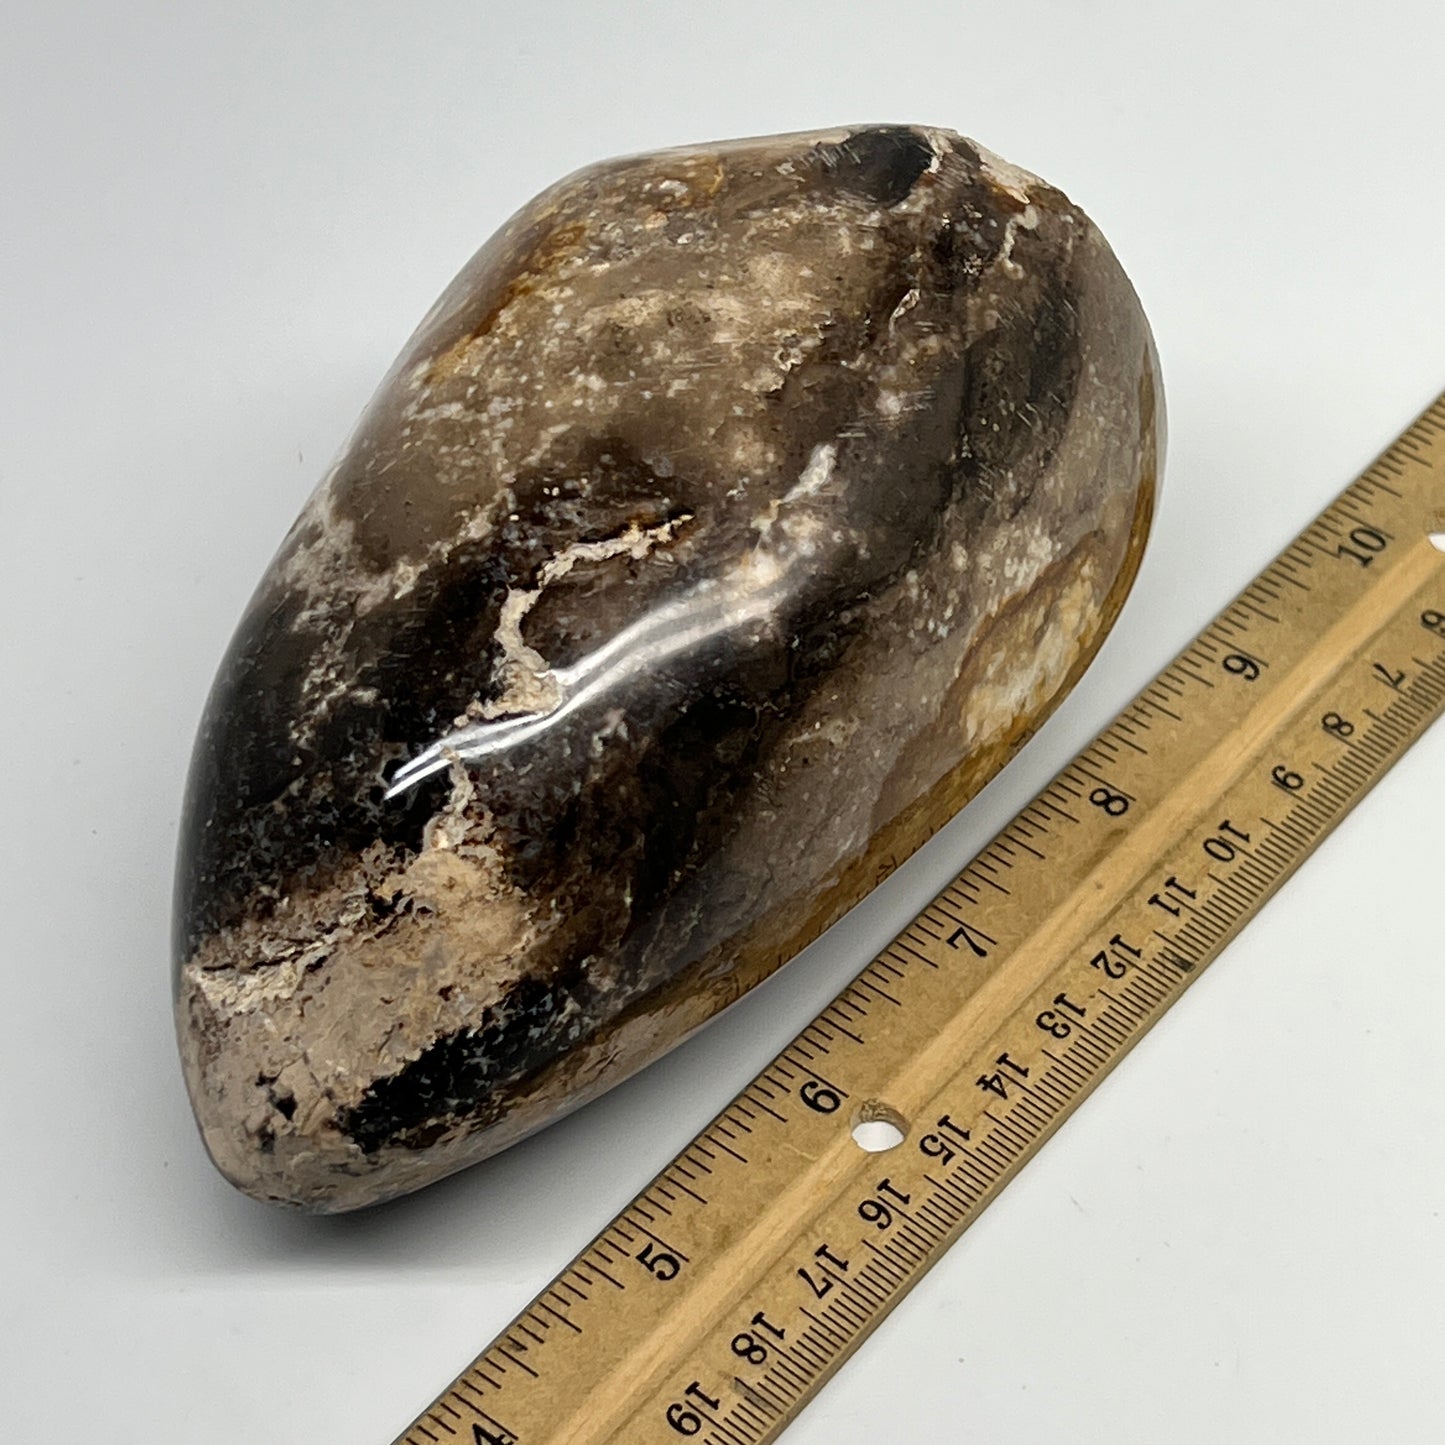 770g,4.8"x3"x2.8" Black Opal Freeform Polished Gemstone @Madagascar,B21096